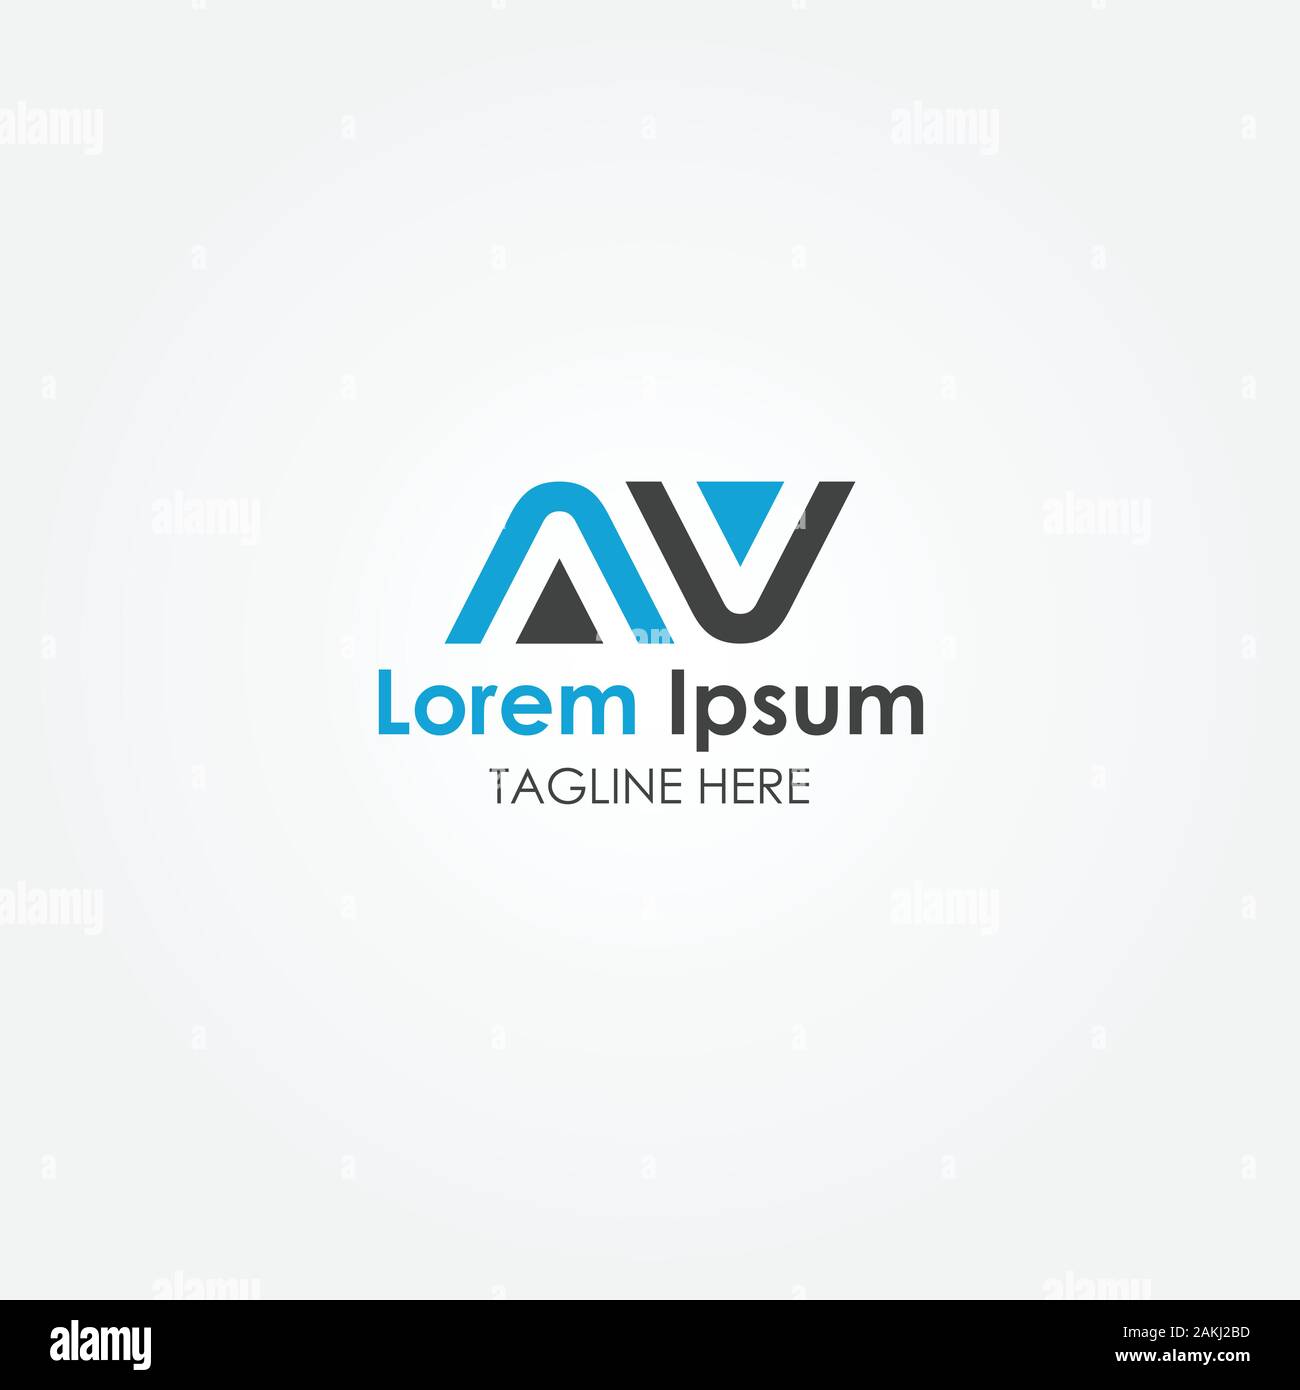 Premium Vector  Letter a v heart love logo design modern logo